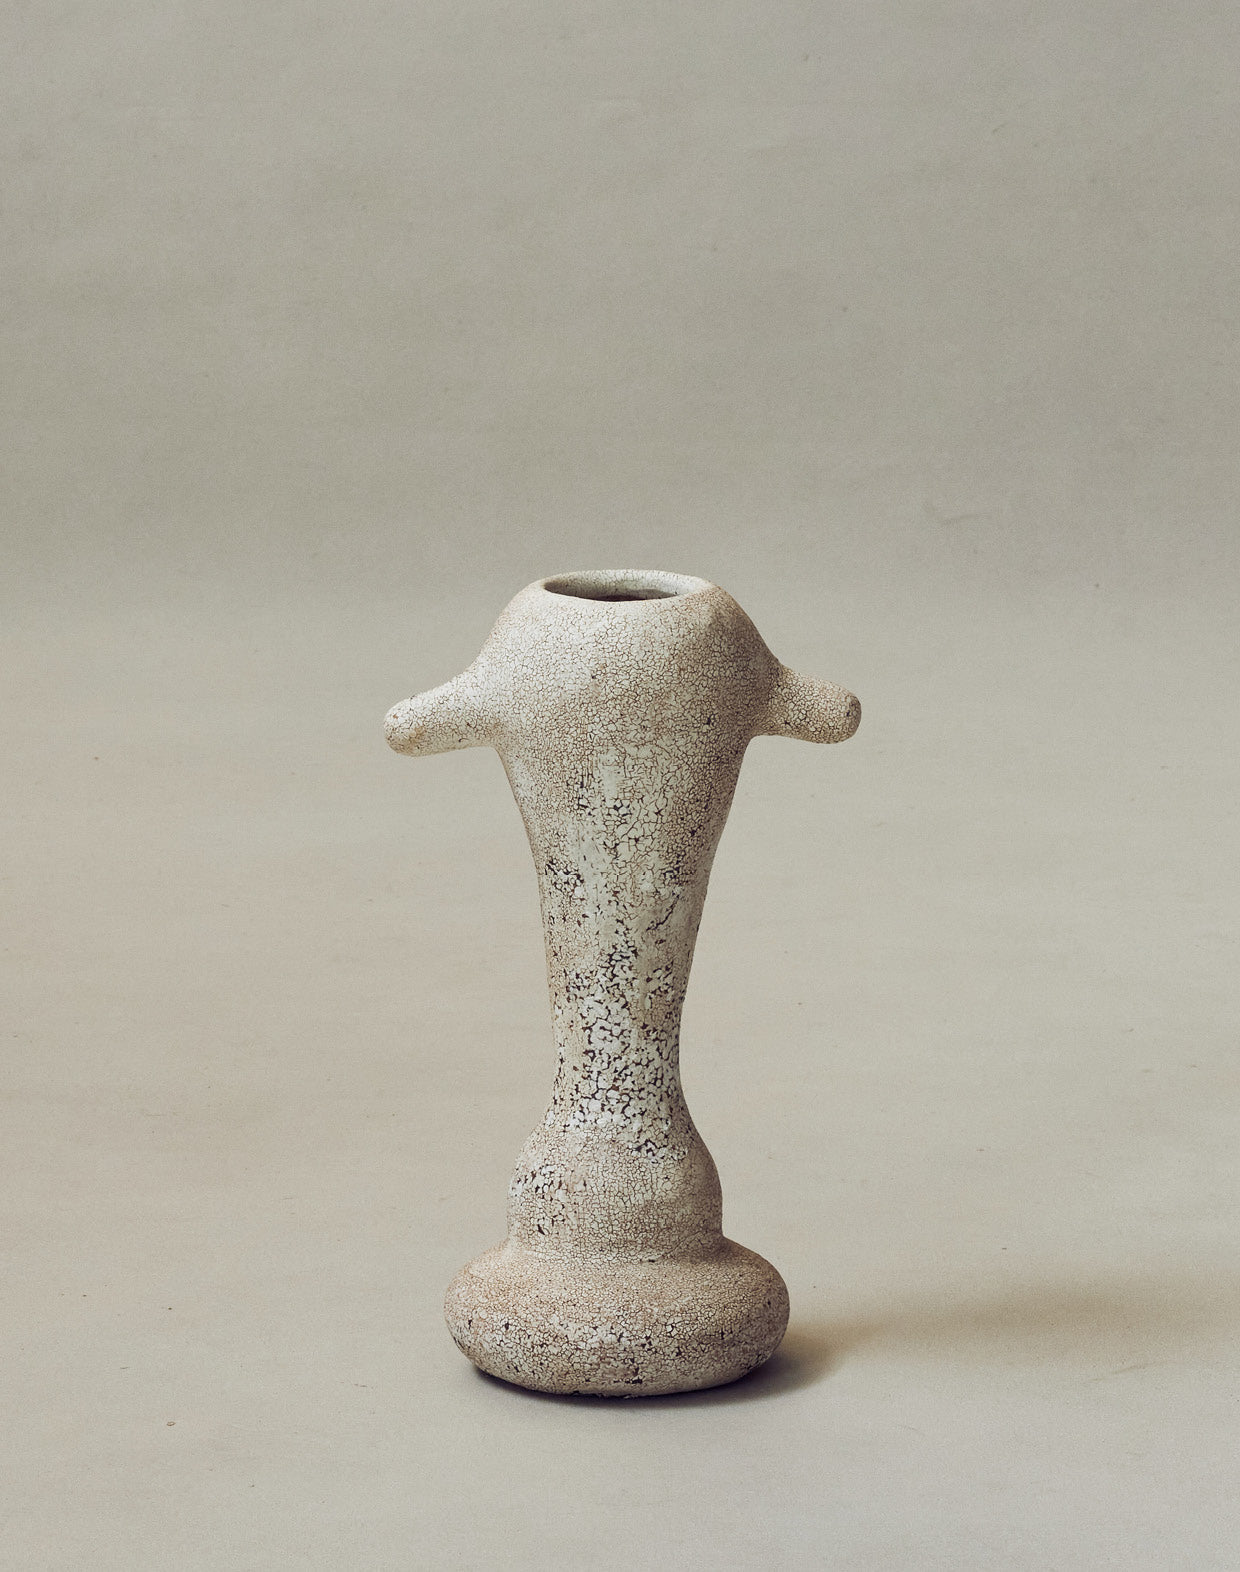 Maggie Wells, Ceramic Sculpture with Terra Sigillata Glaze No. 05